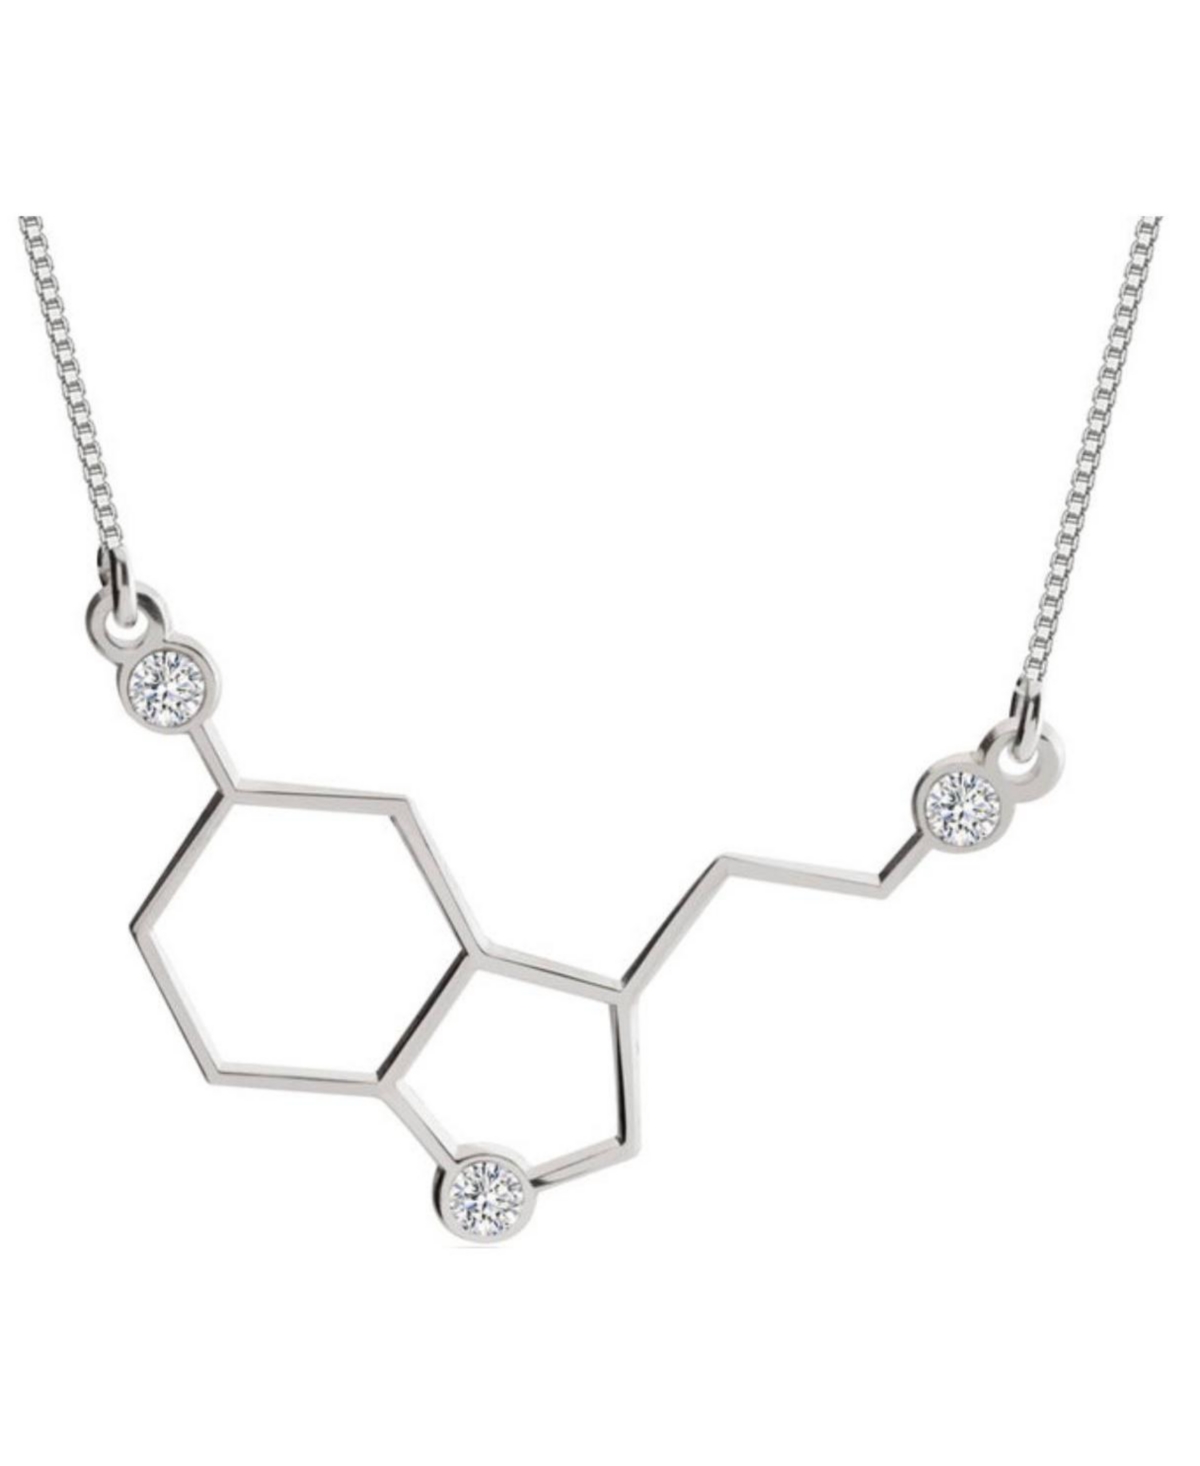 Serotonin Necklace - Silver